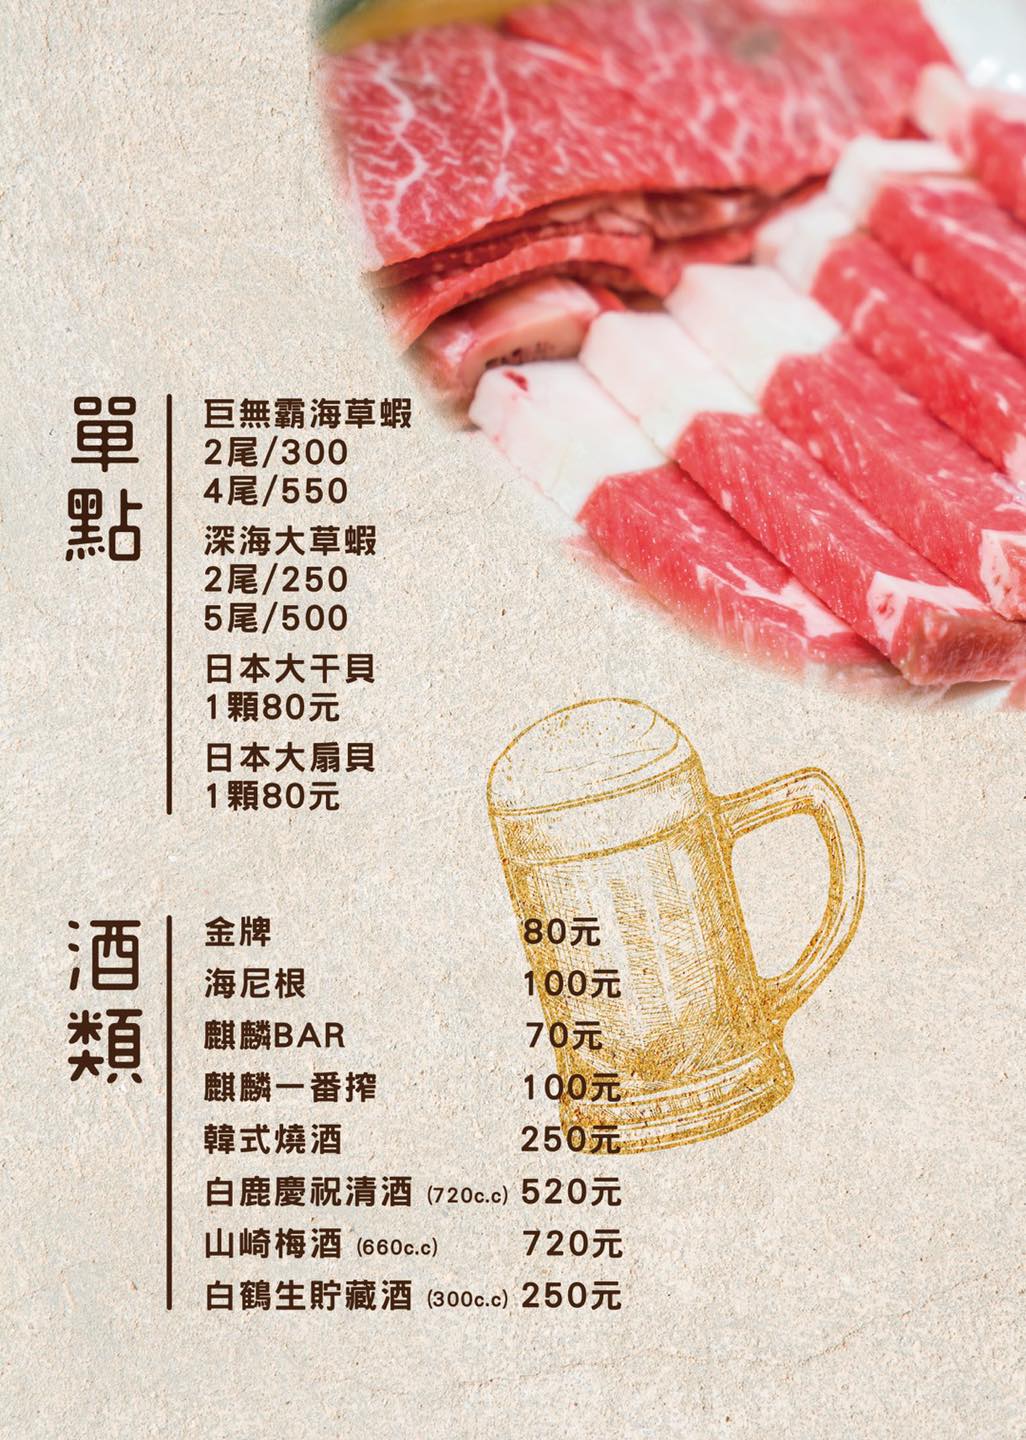 豚野日式炭火燒肉-基隆店菜單